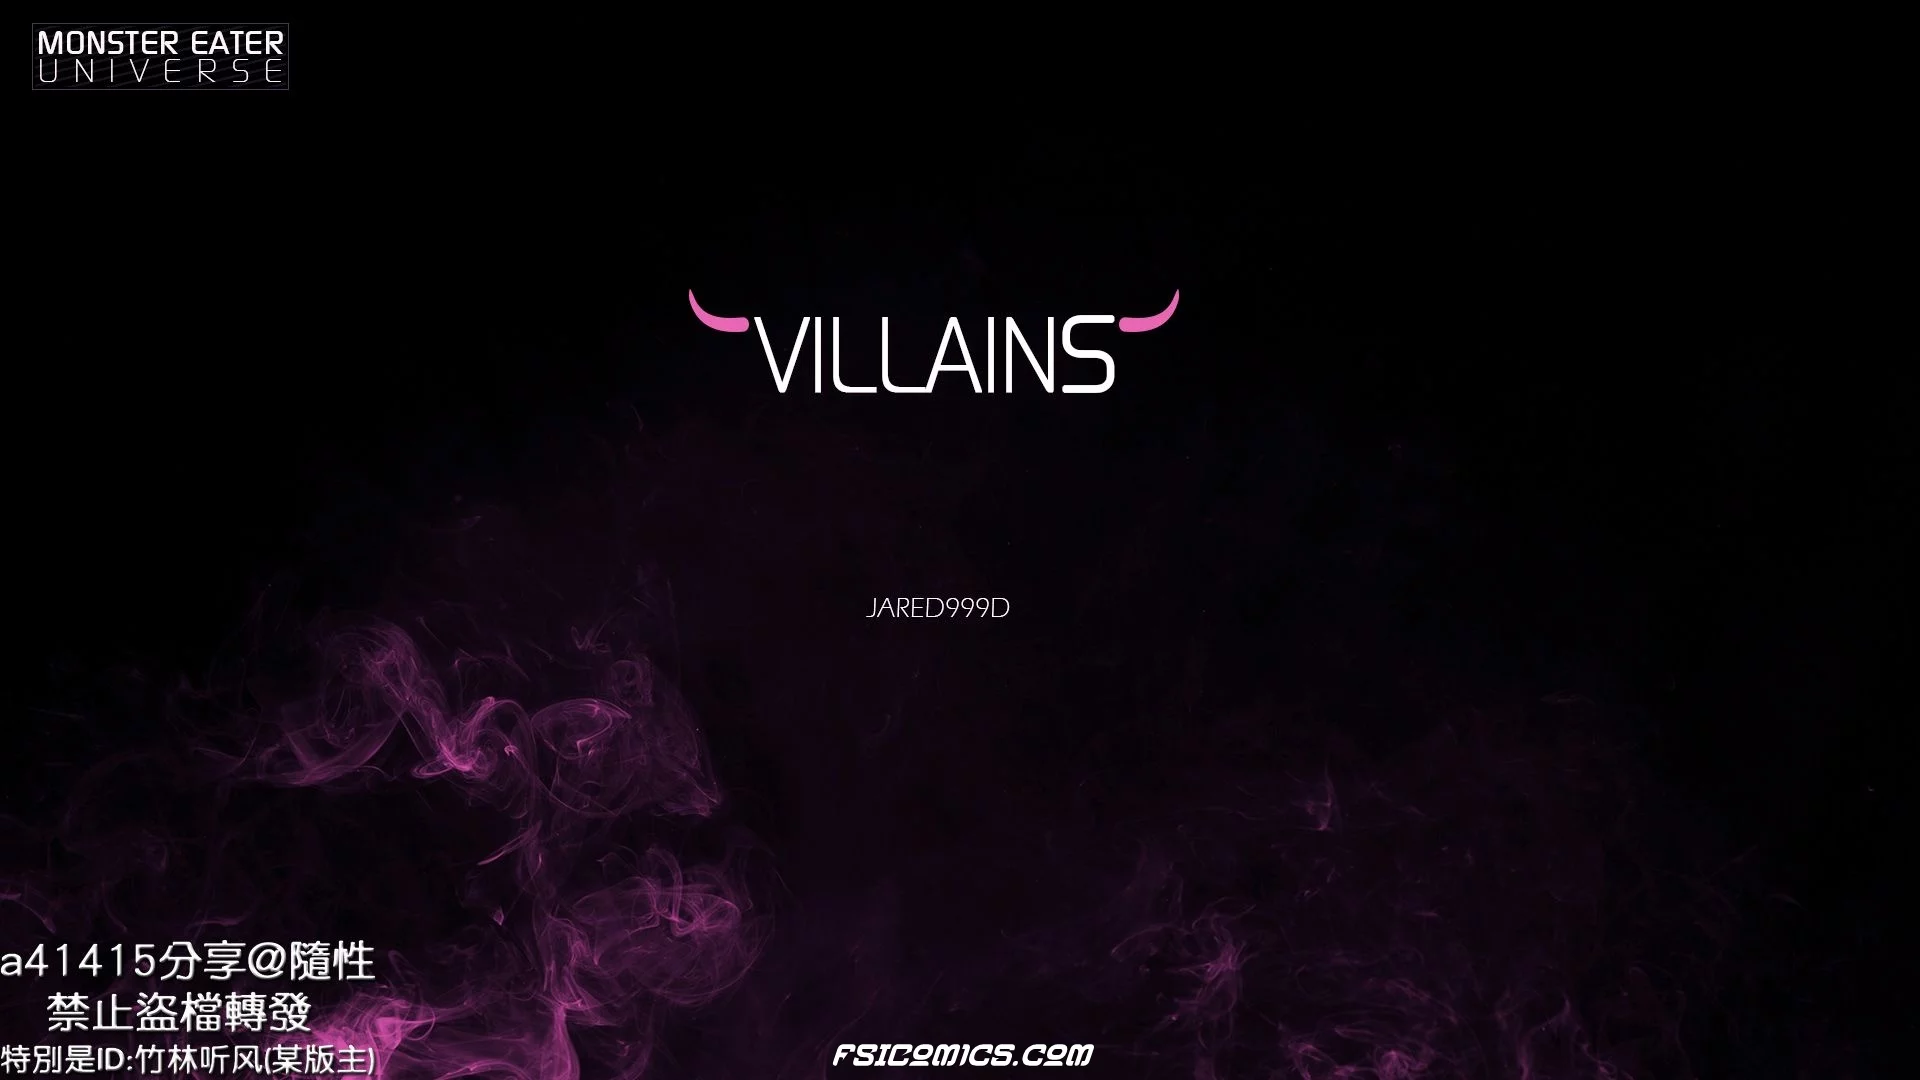 Villains Chapter 1 -Jared999D - 39 - FSIComics